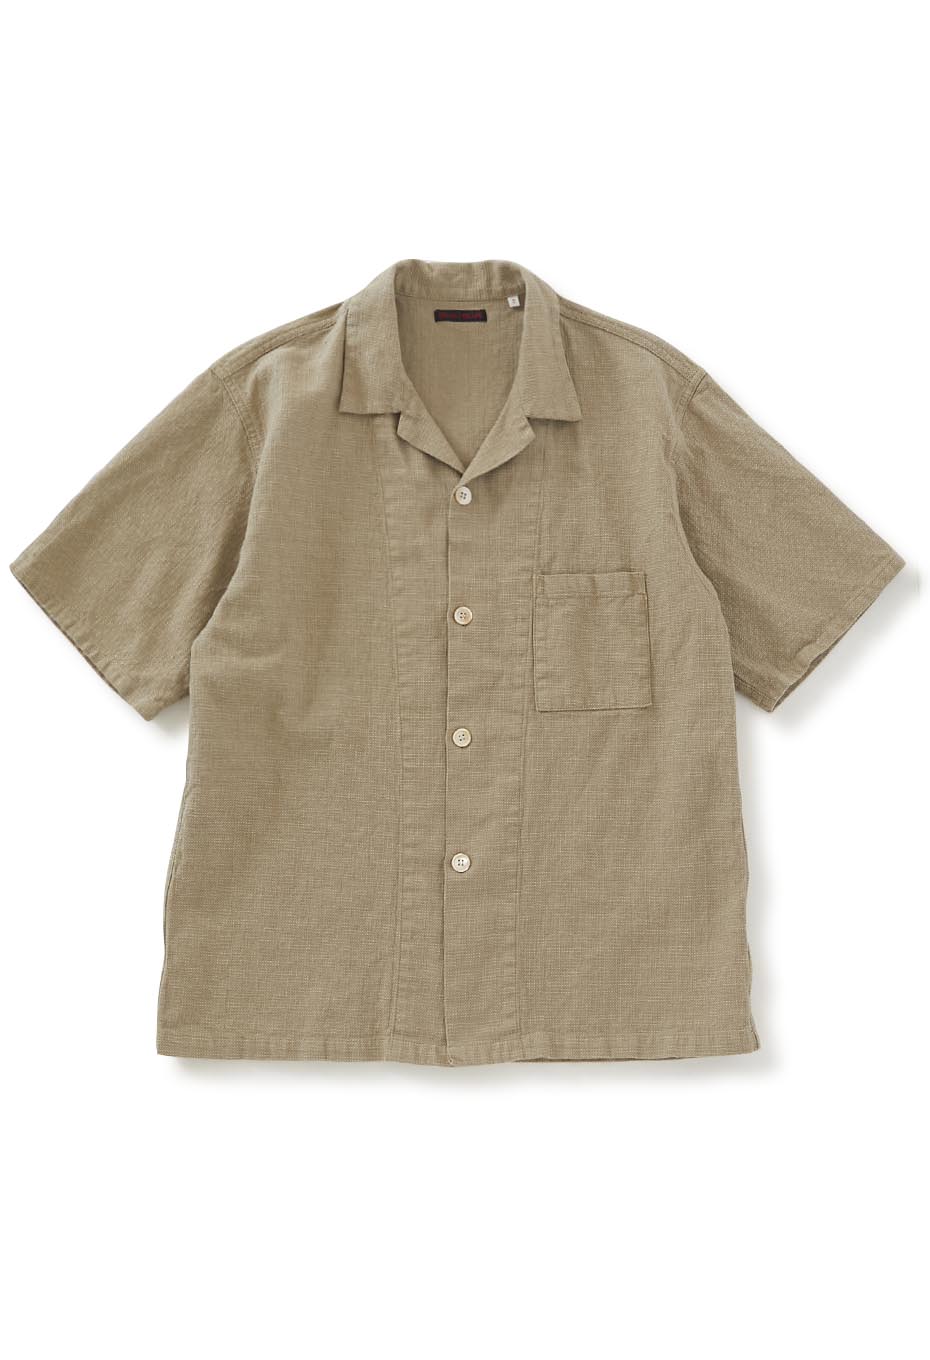 Cotton linen prepeller open collar short sleeve shirt